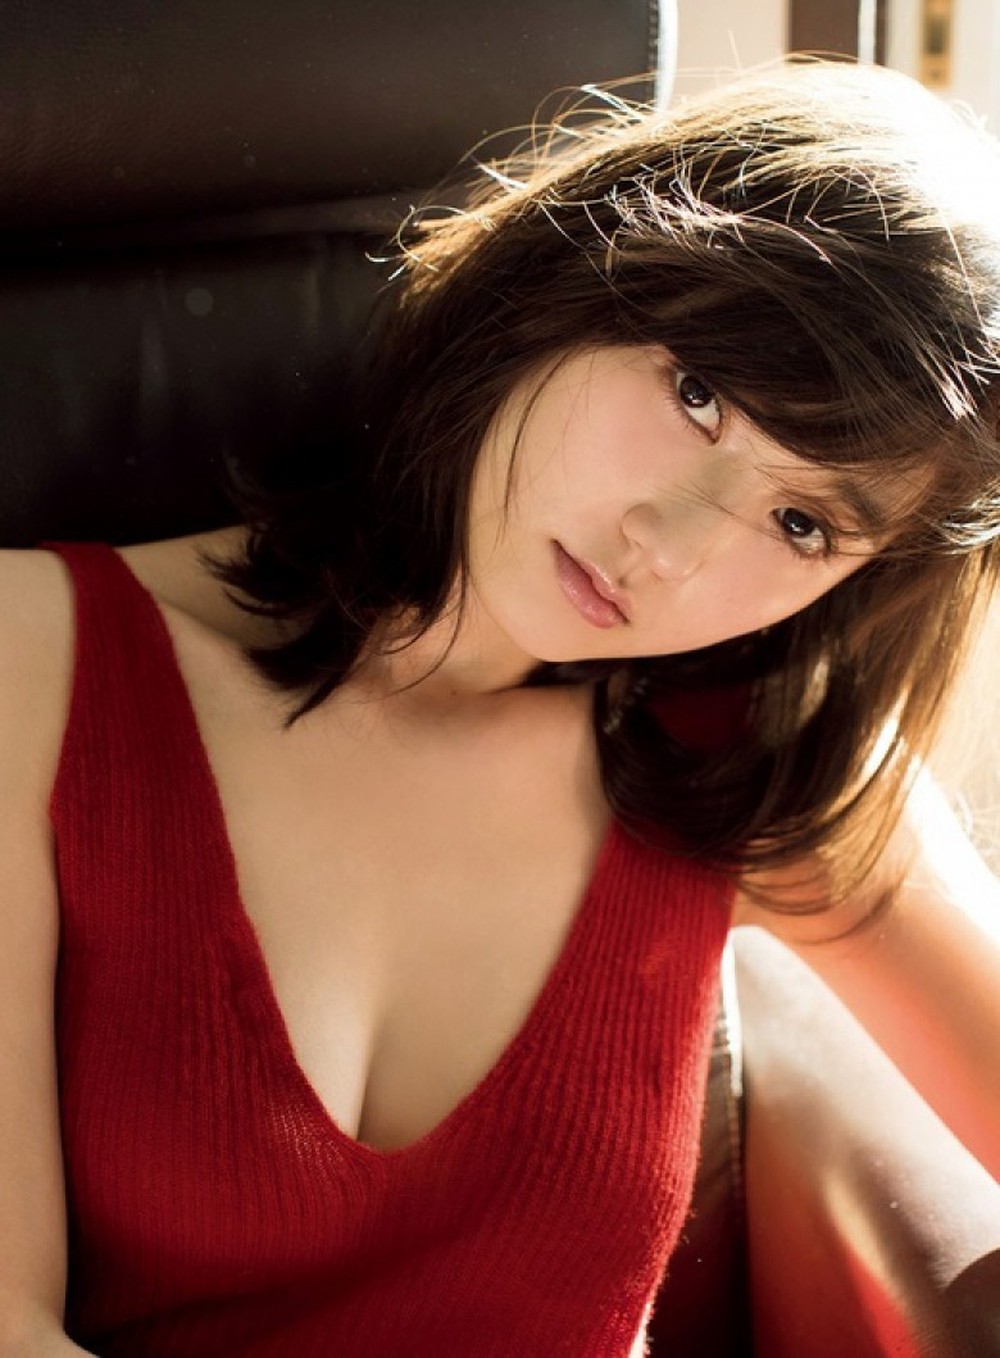 Mỹ nữ trên tạp chí người lớn Nhật: Nét đẹp trong sáng, thân hình nóng bỏng - Ảnh 12.